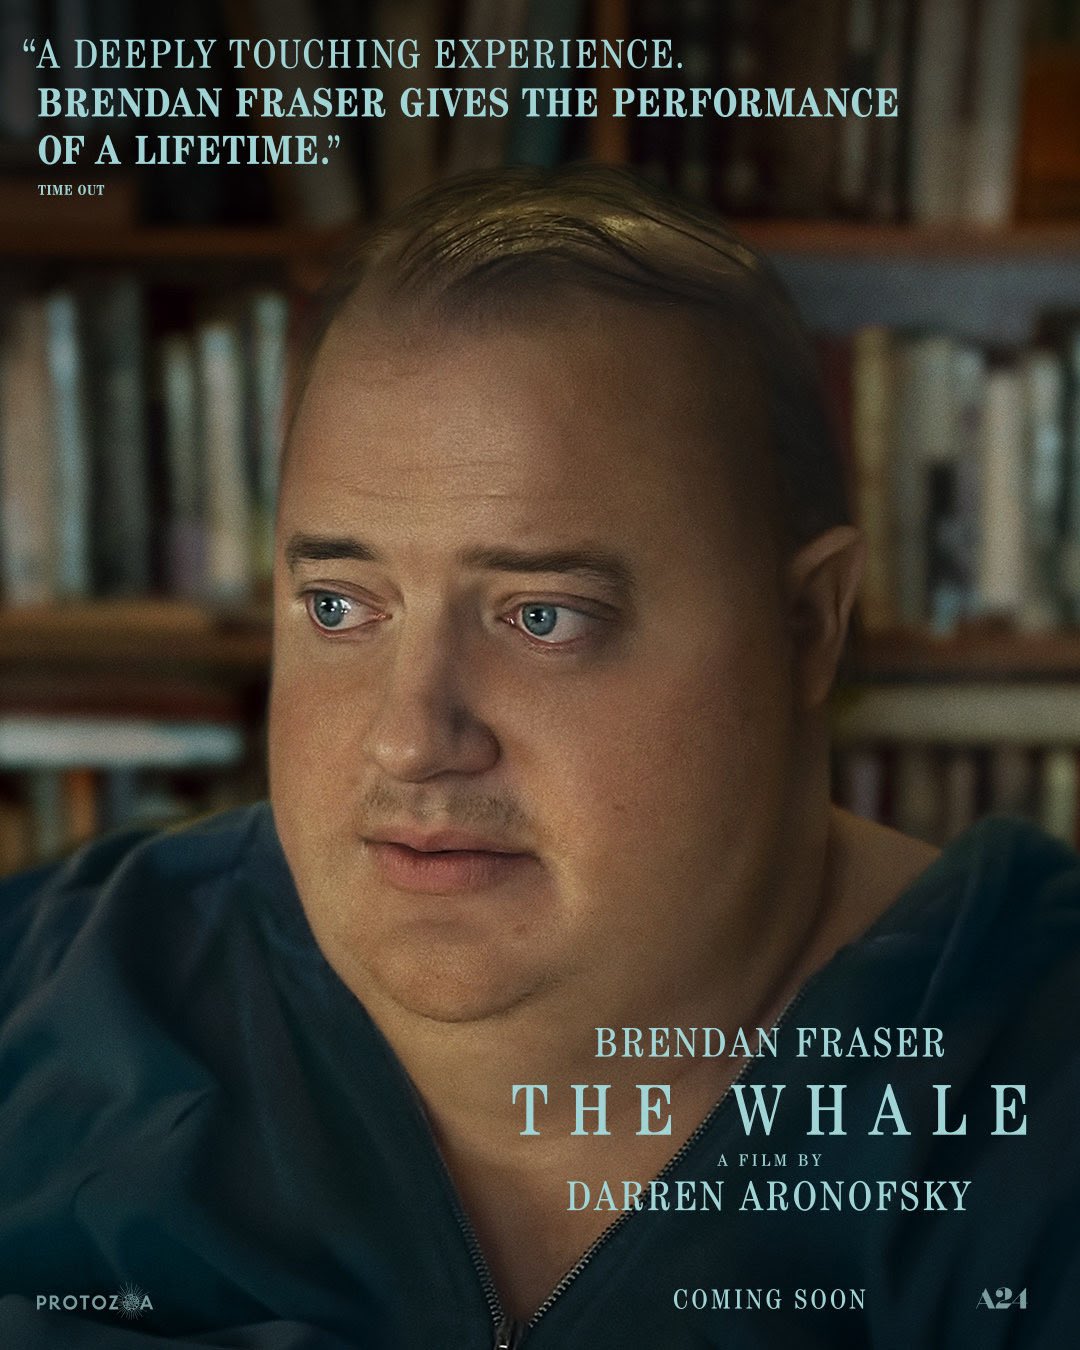 대런 애로노프스키 + 브랜든 프레이저 "The Whale" 한글자막 예고편 입니다.